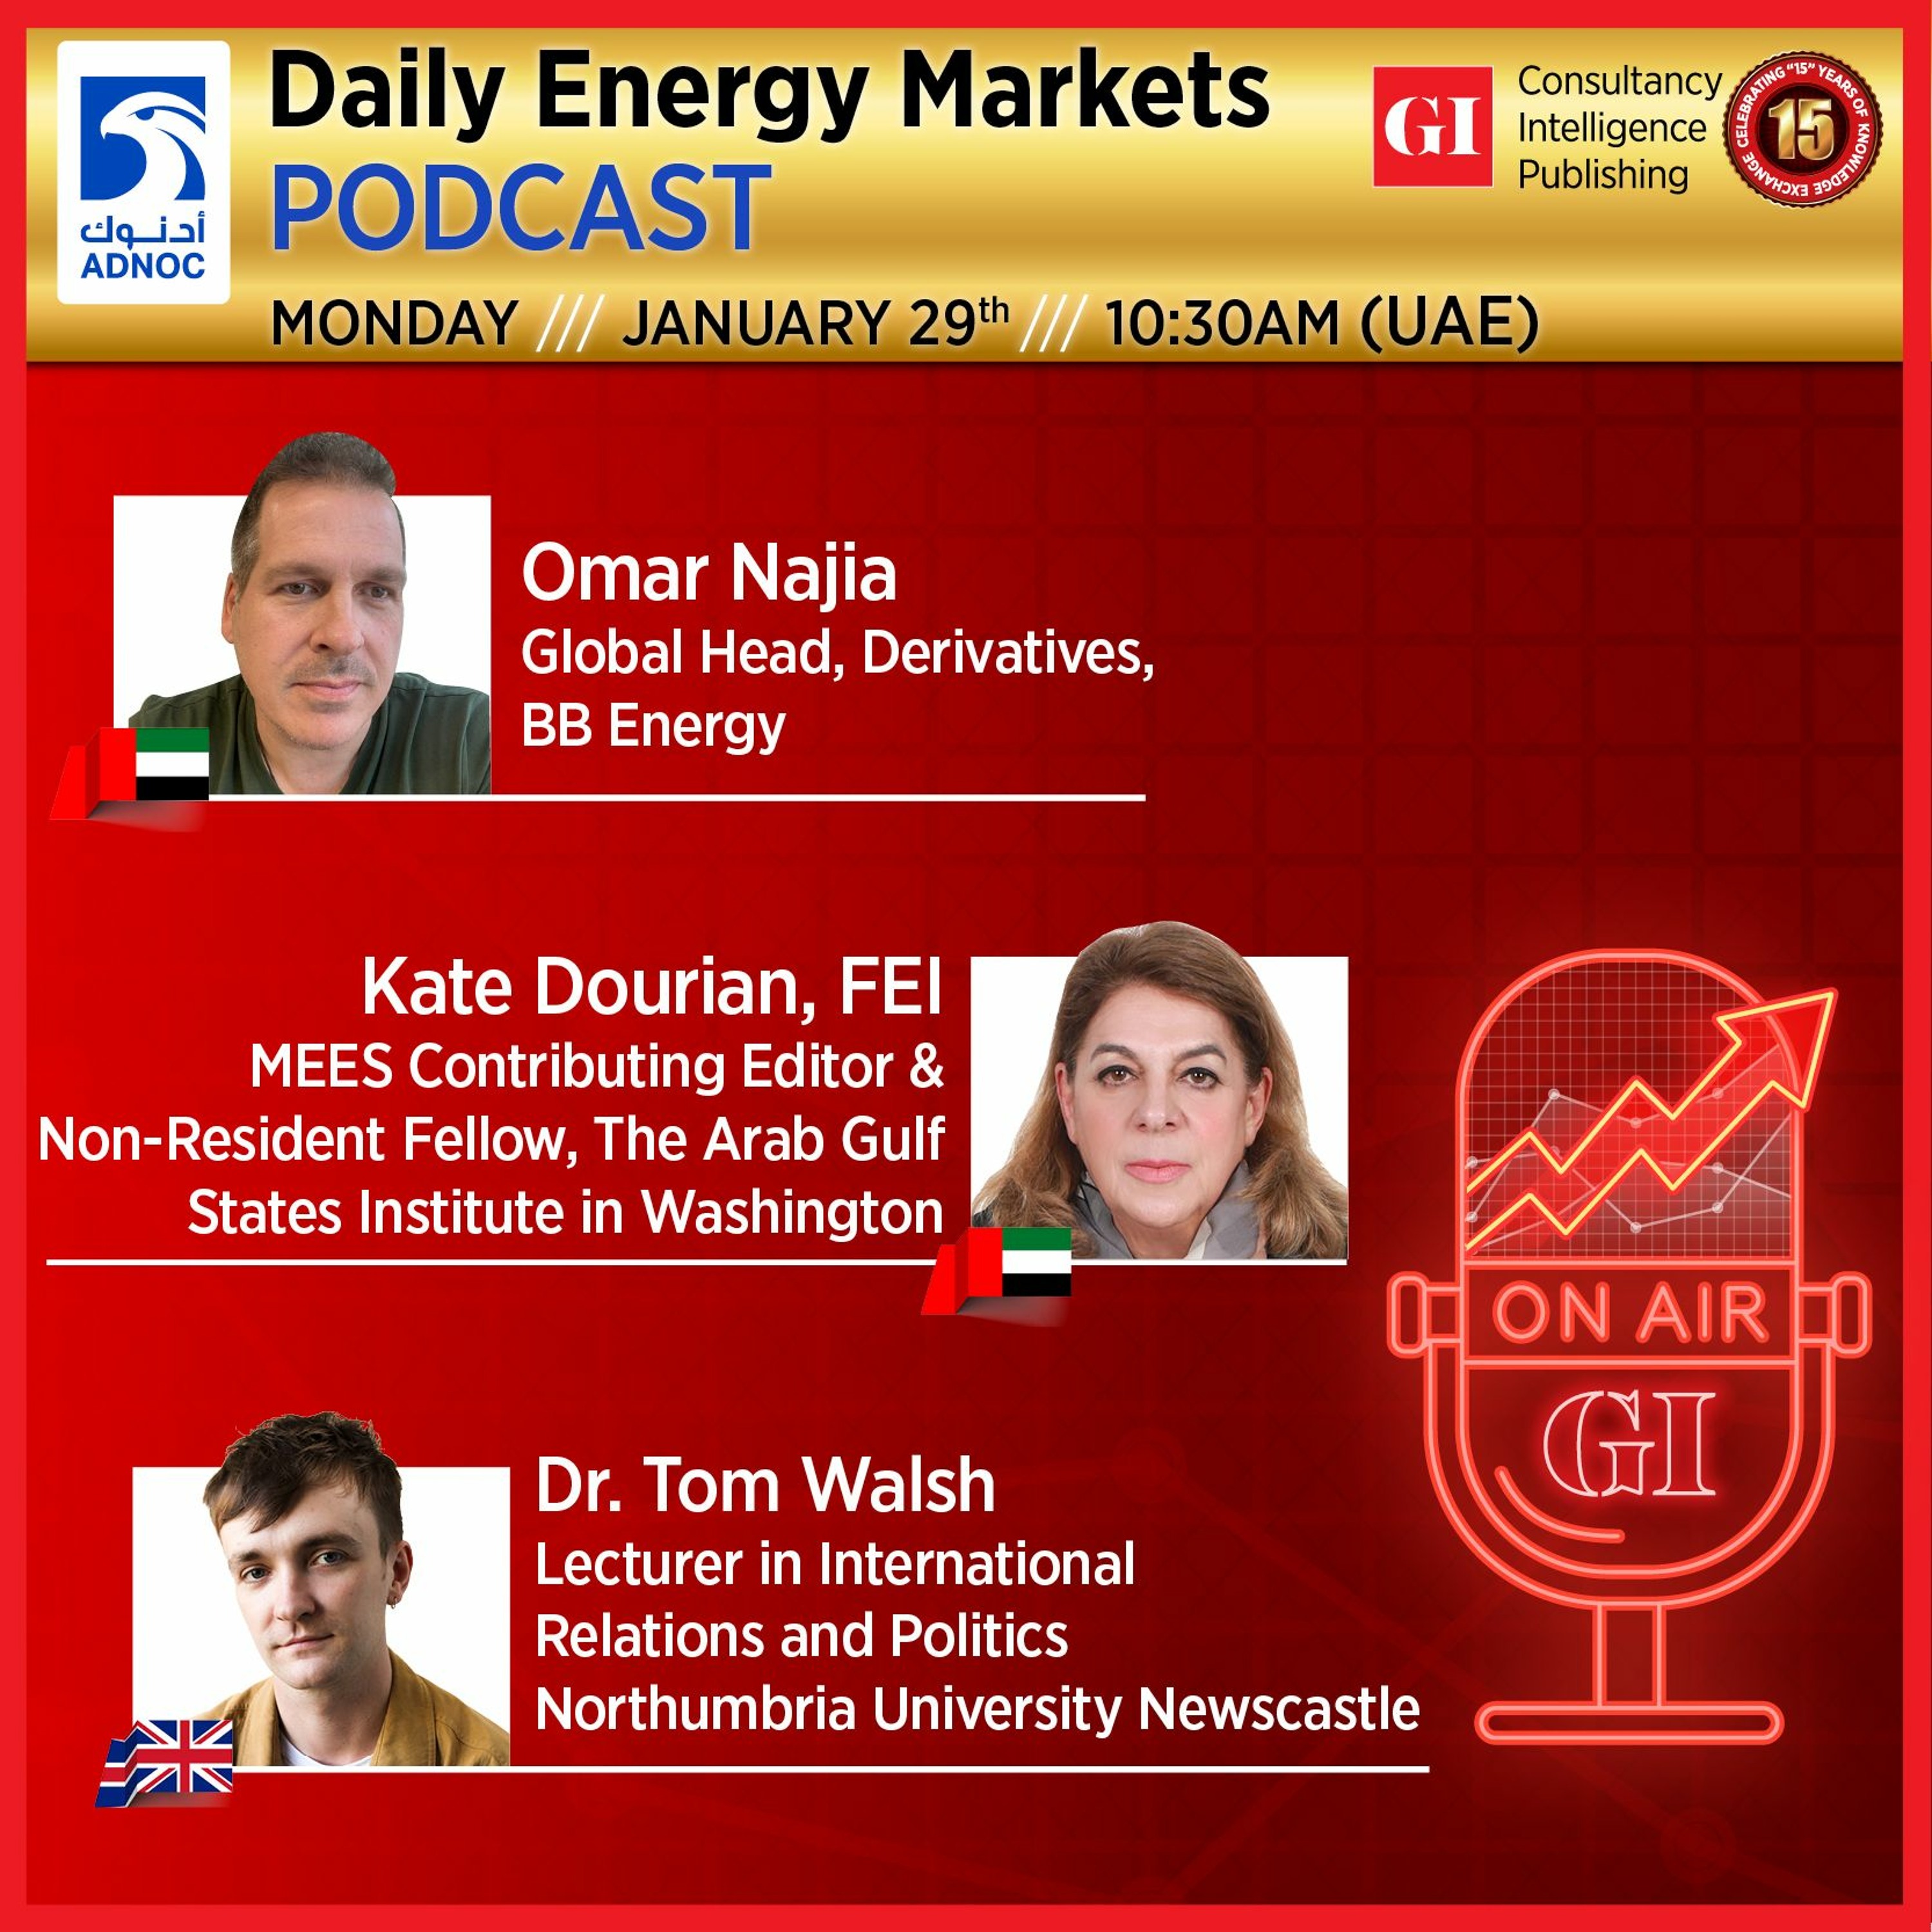 PODCAST: Daily Energy Markets - January 29th